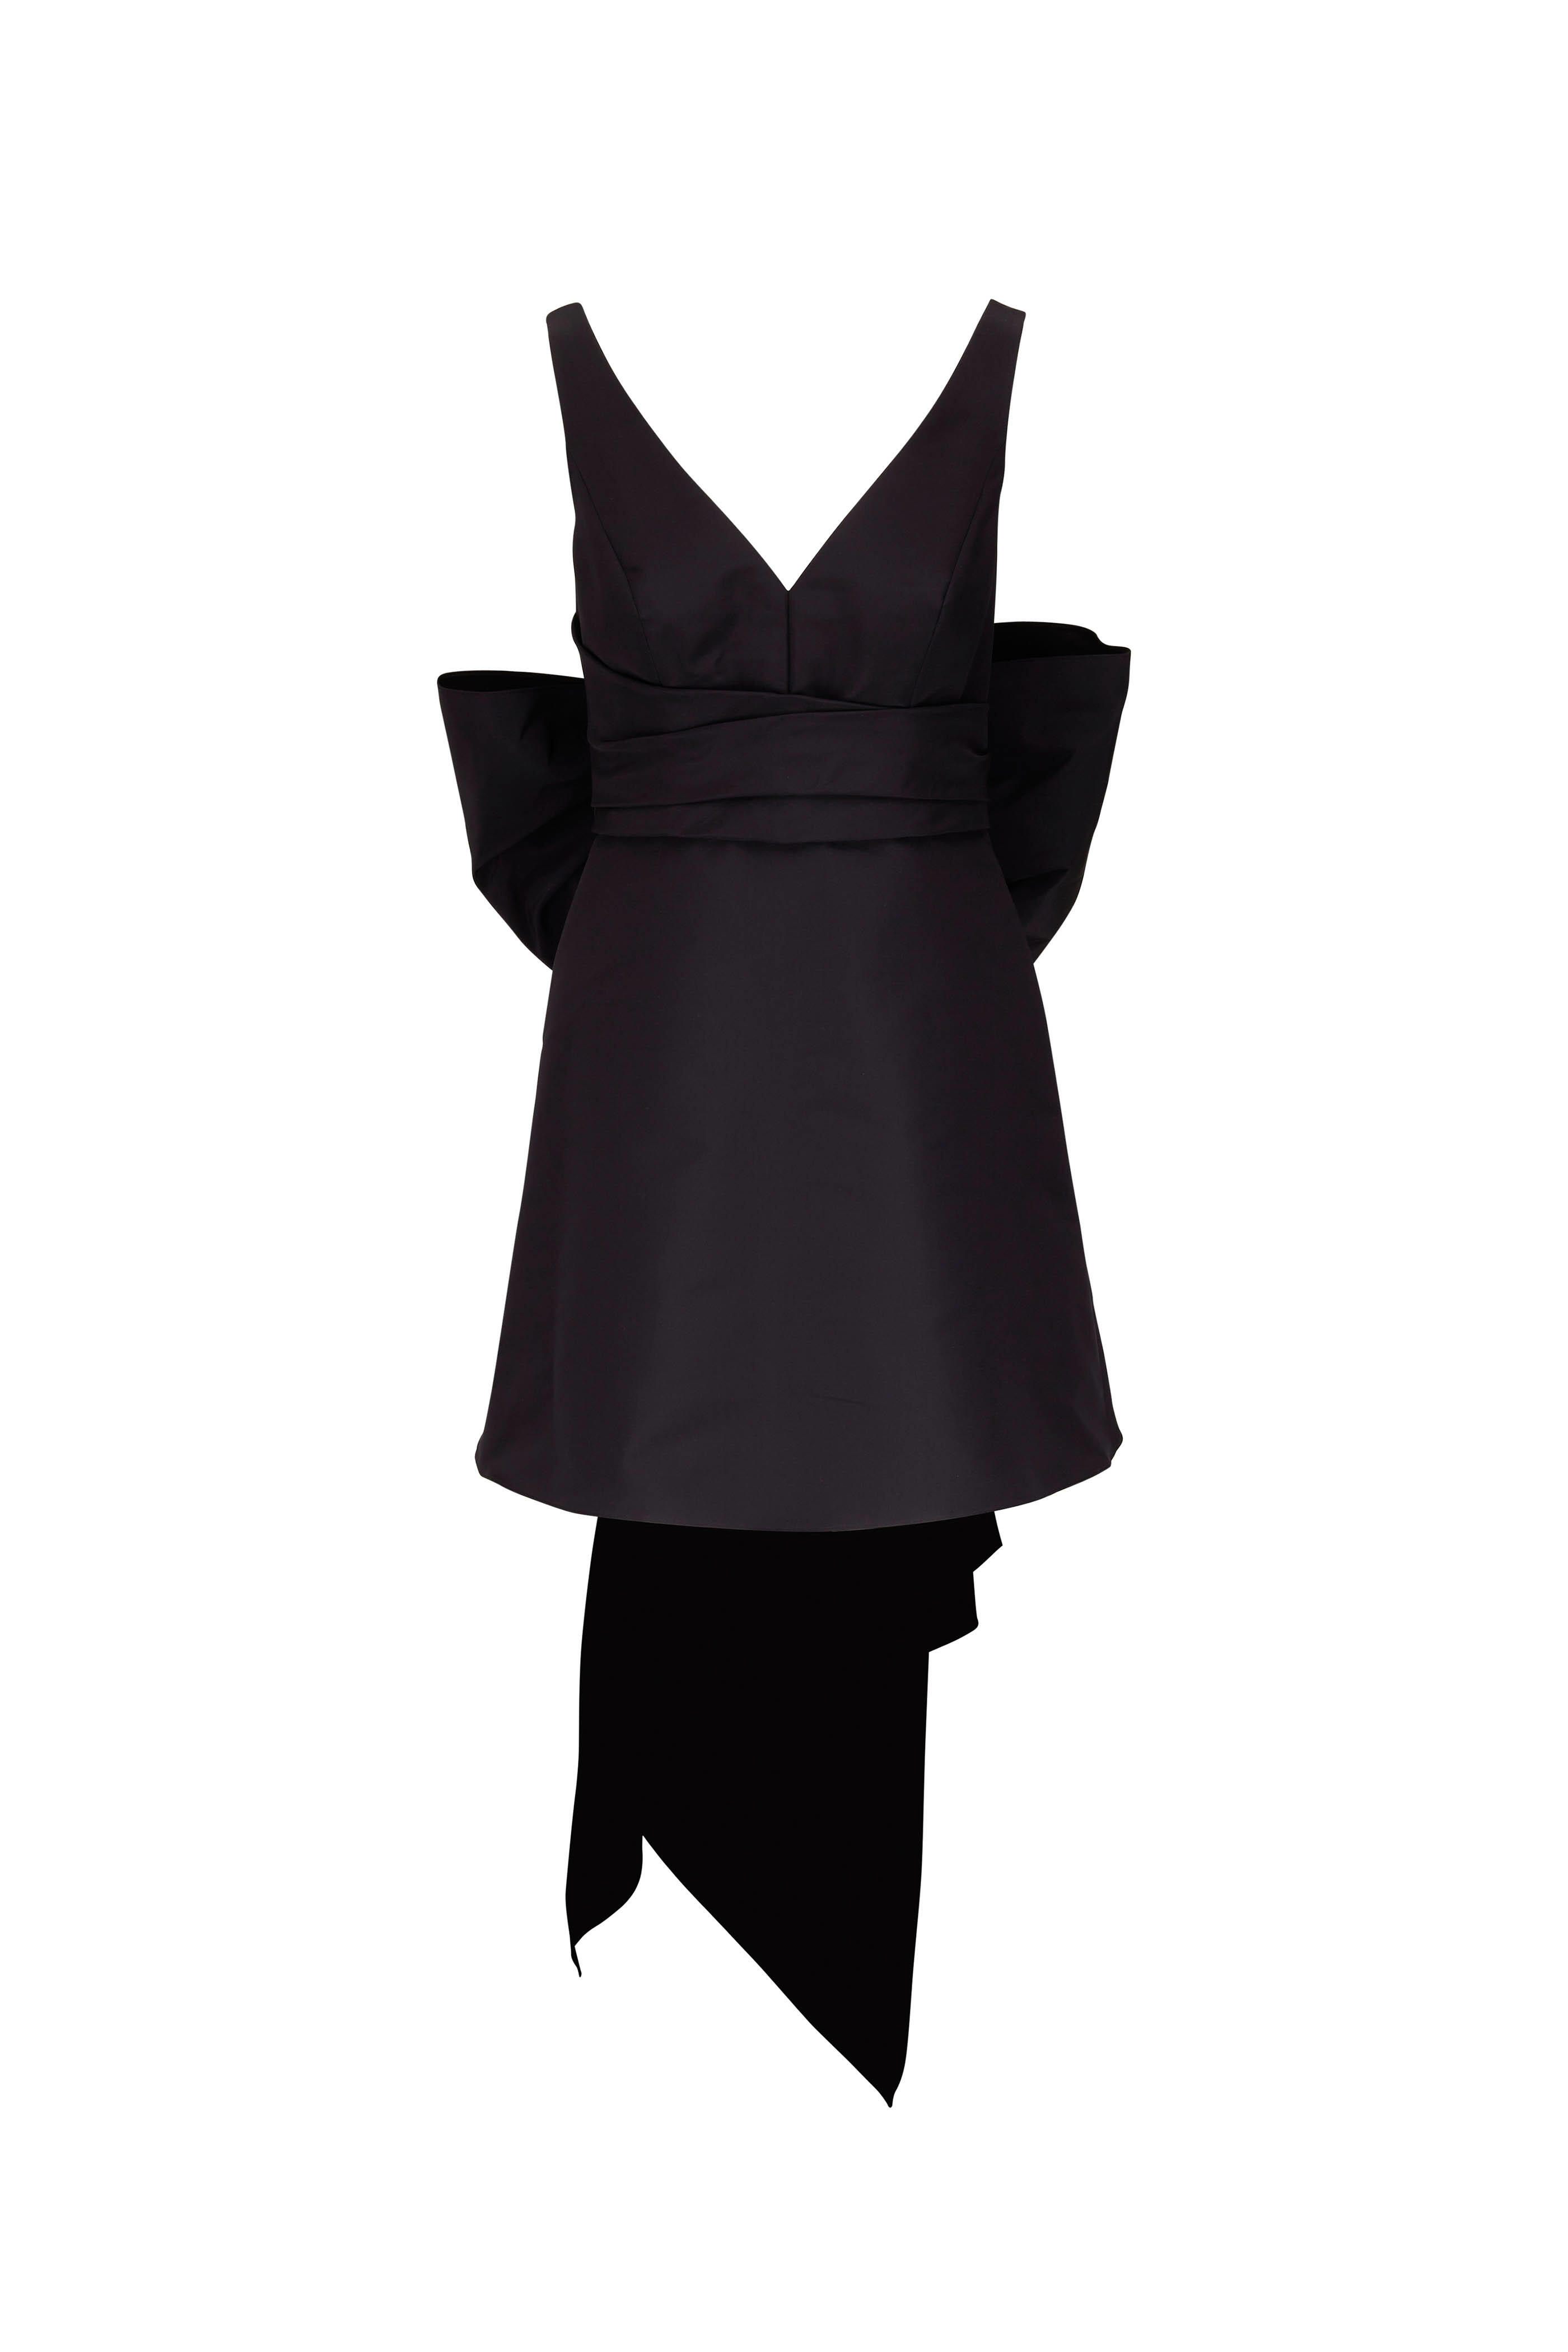 Carolina Herrera - Black Mini V-Neck Dress With Dramatic Bow